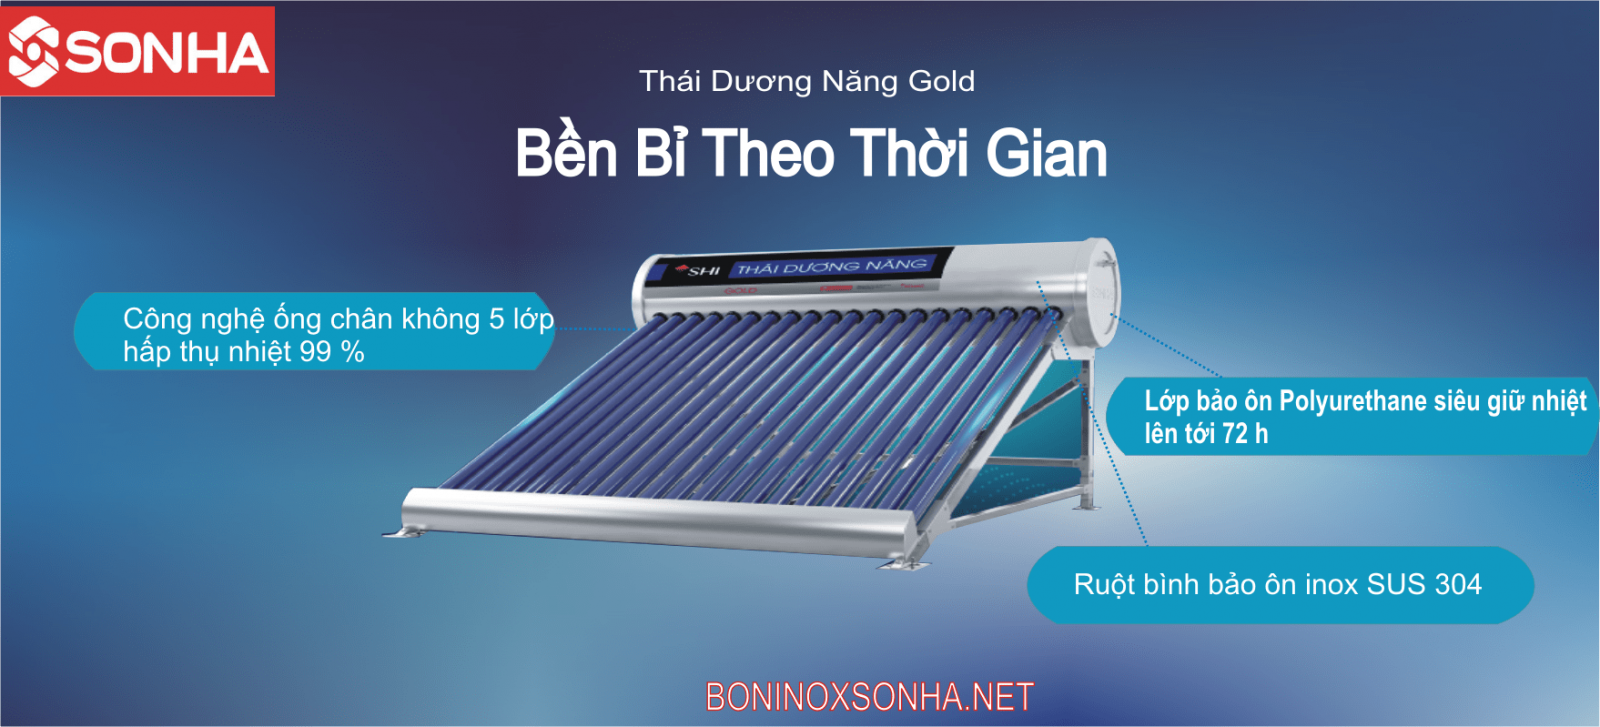 Thái Dương Năng GOLD 58 - 200L Chân Không Sơn Hà